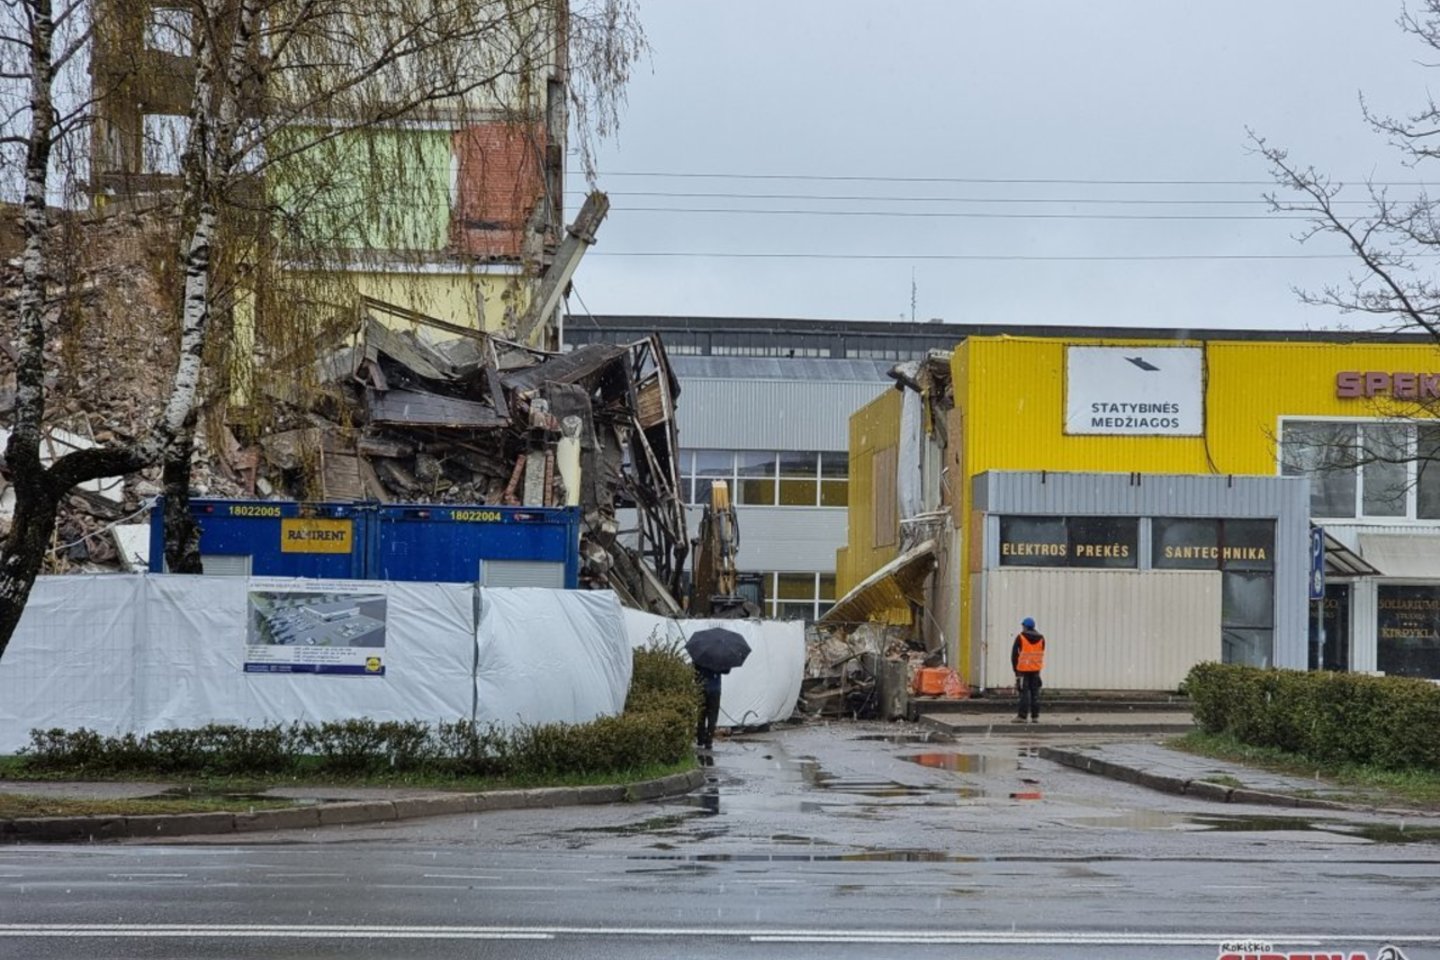  Pirmadienį Rokiškyje griaunant pastatą įvyko nelaimė.<br> Rokiskiosirena.lt nuotr.